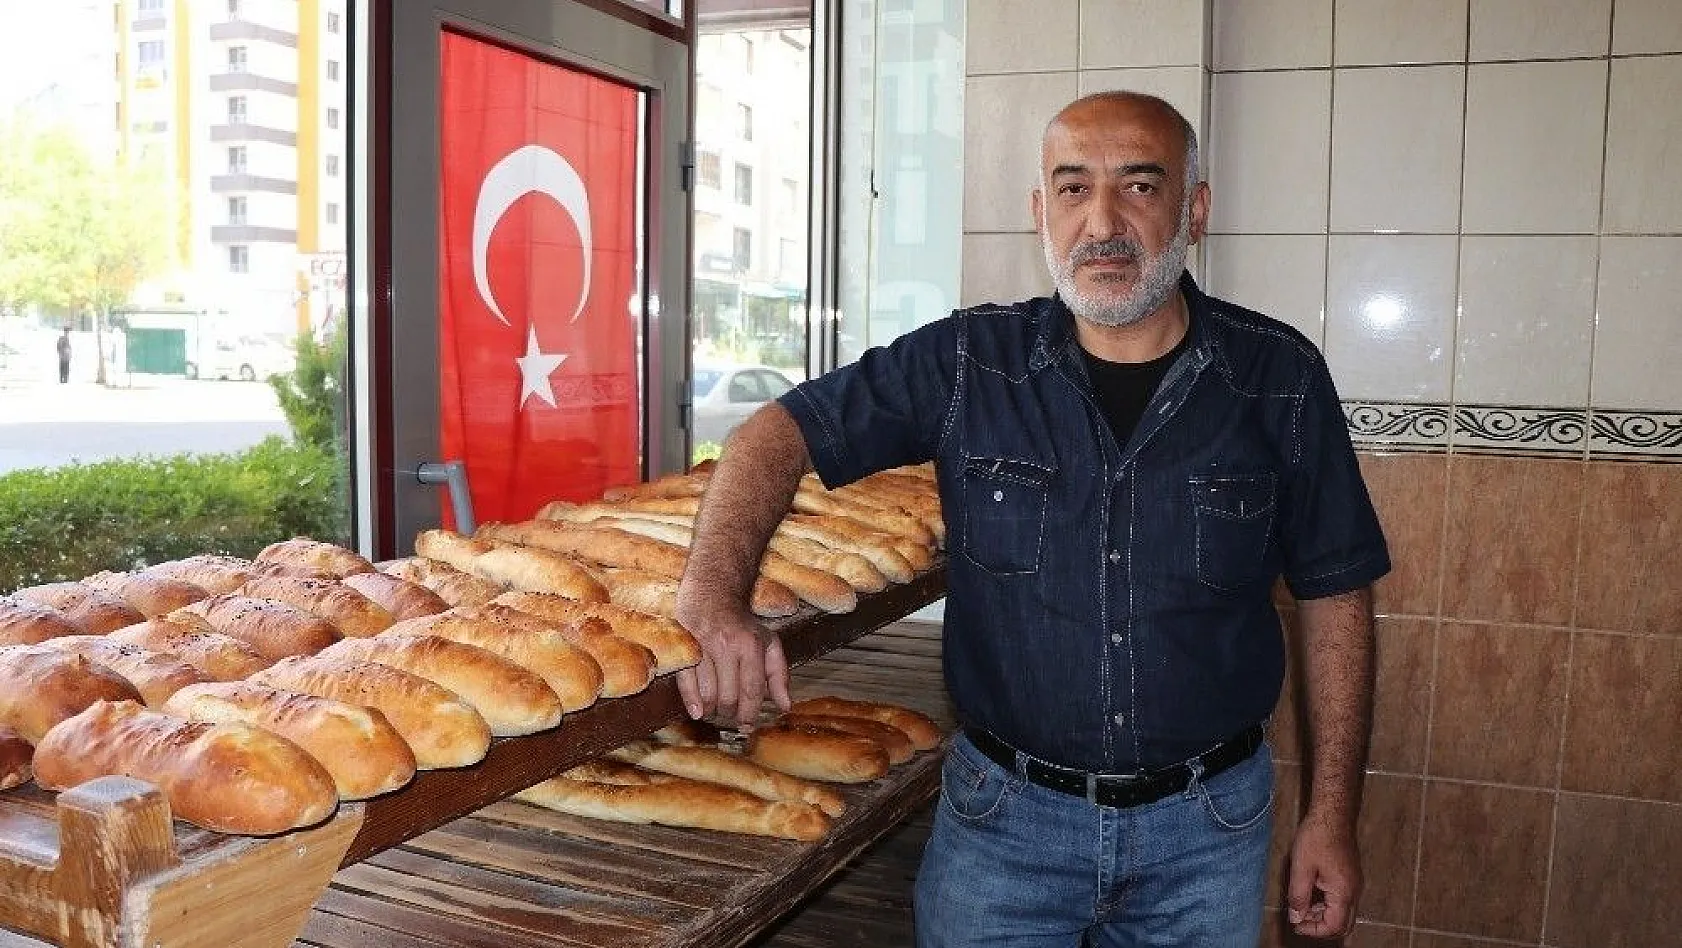 Fırıncılar Odası Başkanı Mustafa Aslan: 'Türkiye genelinde en ucuz ekmeğin olduğu şehir Kayseri'dir'
